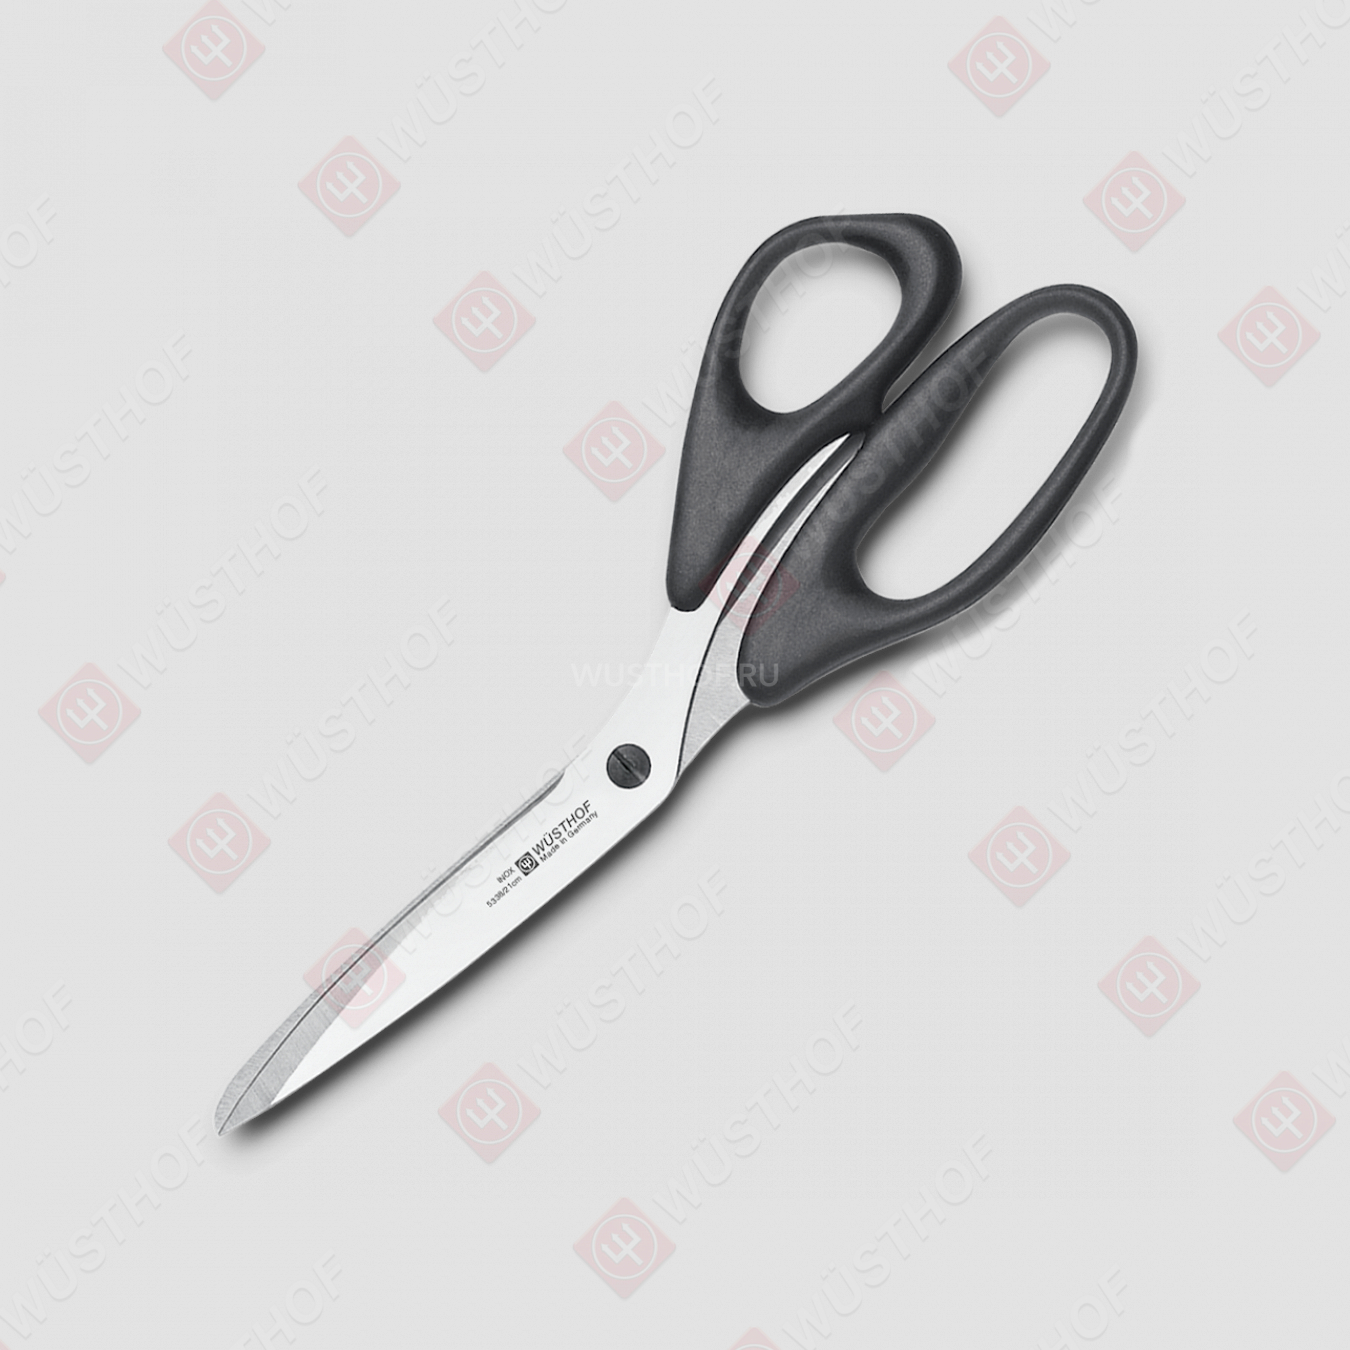 Ножницы хозяйственные 21 см, нержавеющая сталь, пластиковые ручки, серия Professional tools, WUESTHOF, Золинген, Германия